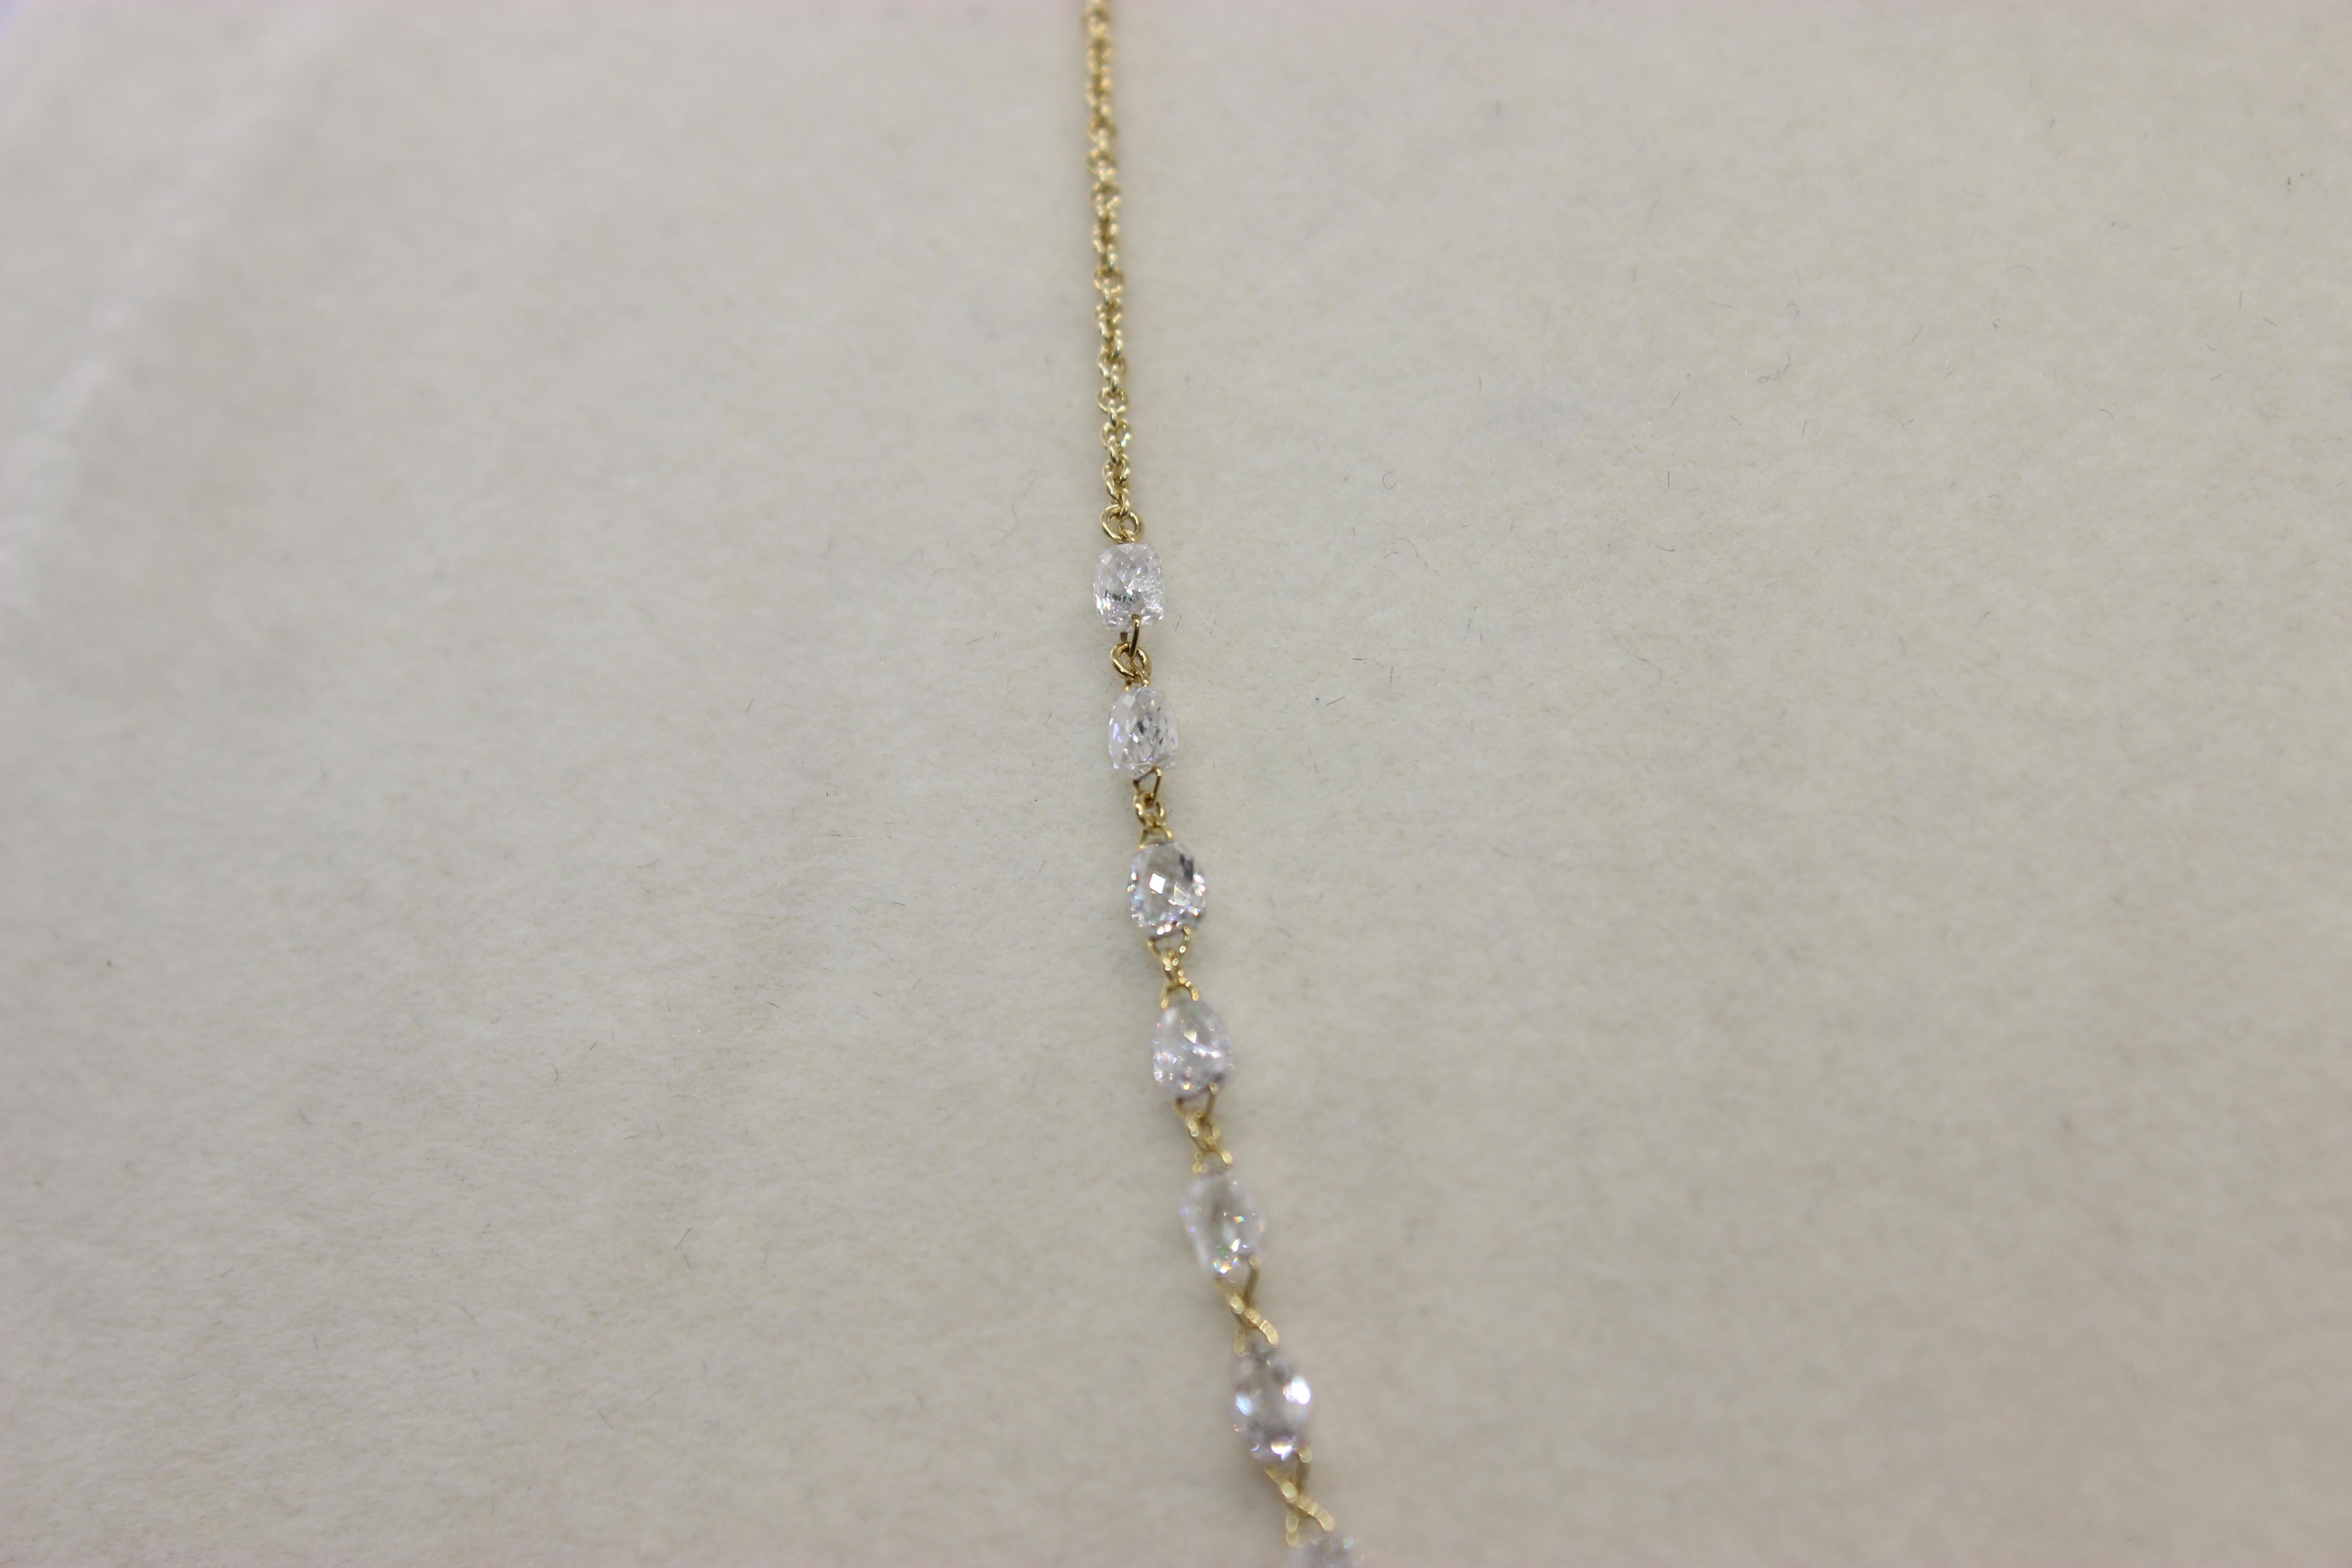 Briolette Cut PANIM 6.79 Carat Diamond Briolette 18 Karat Yellow Gold Choker Necklace For Sale